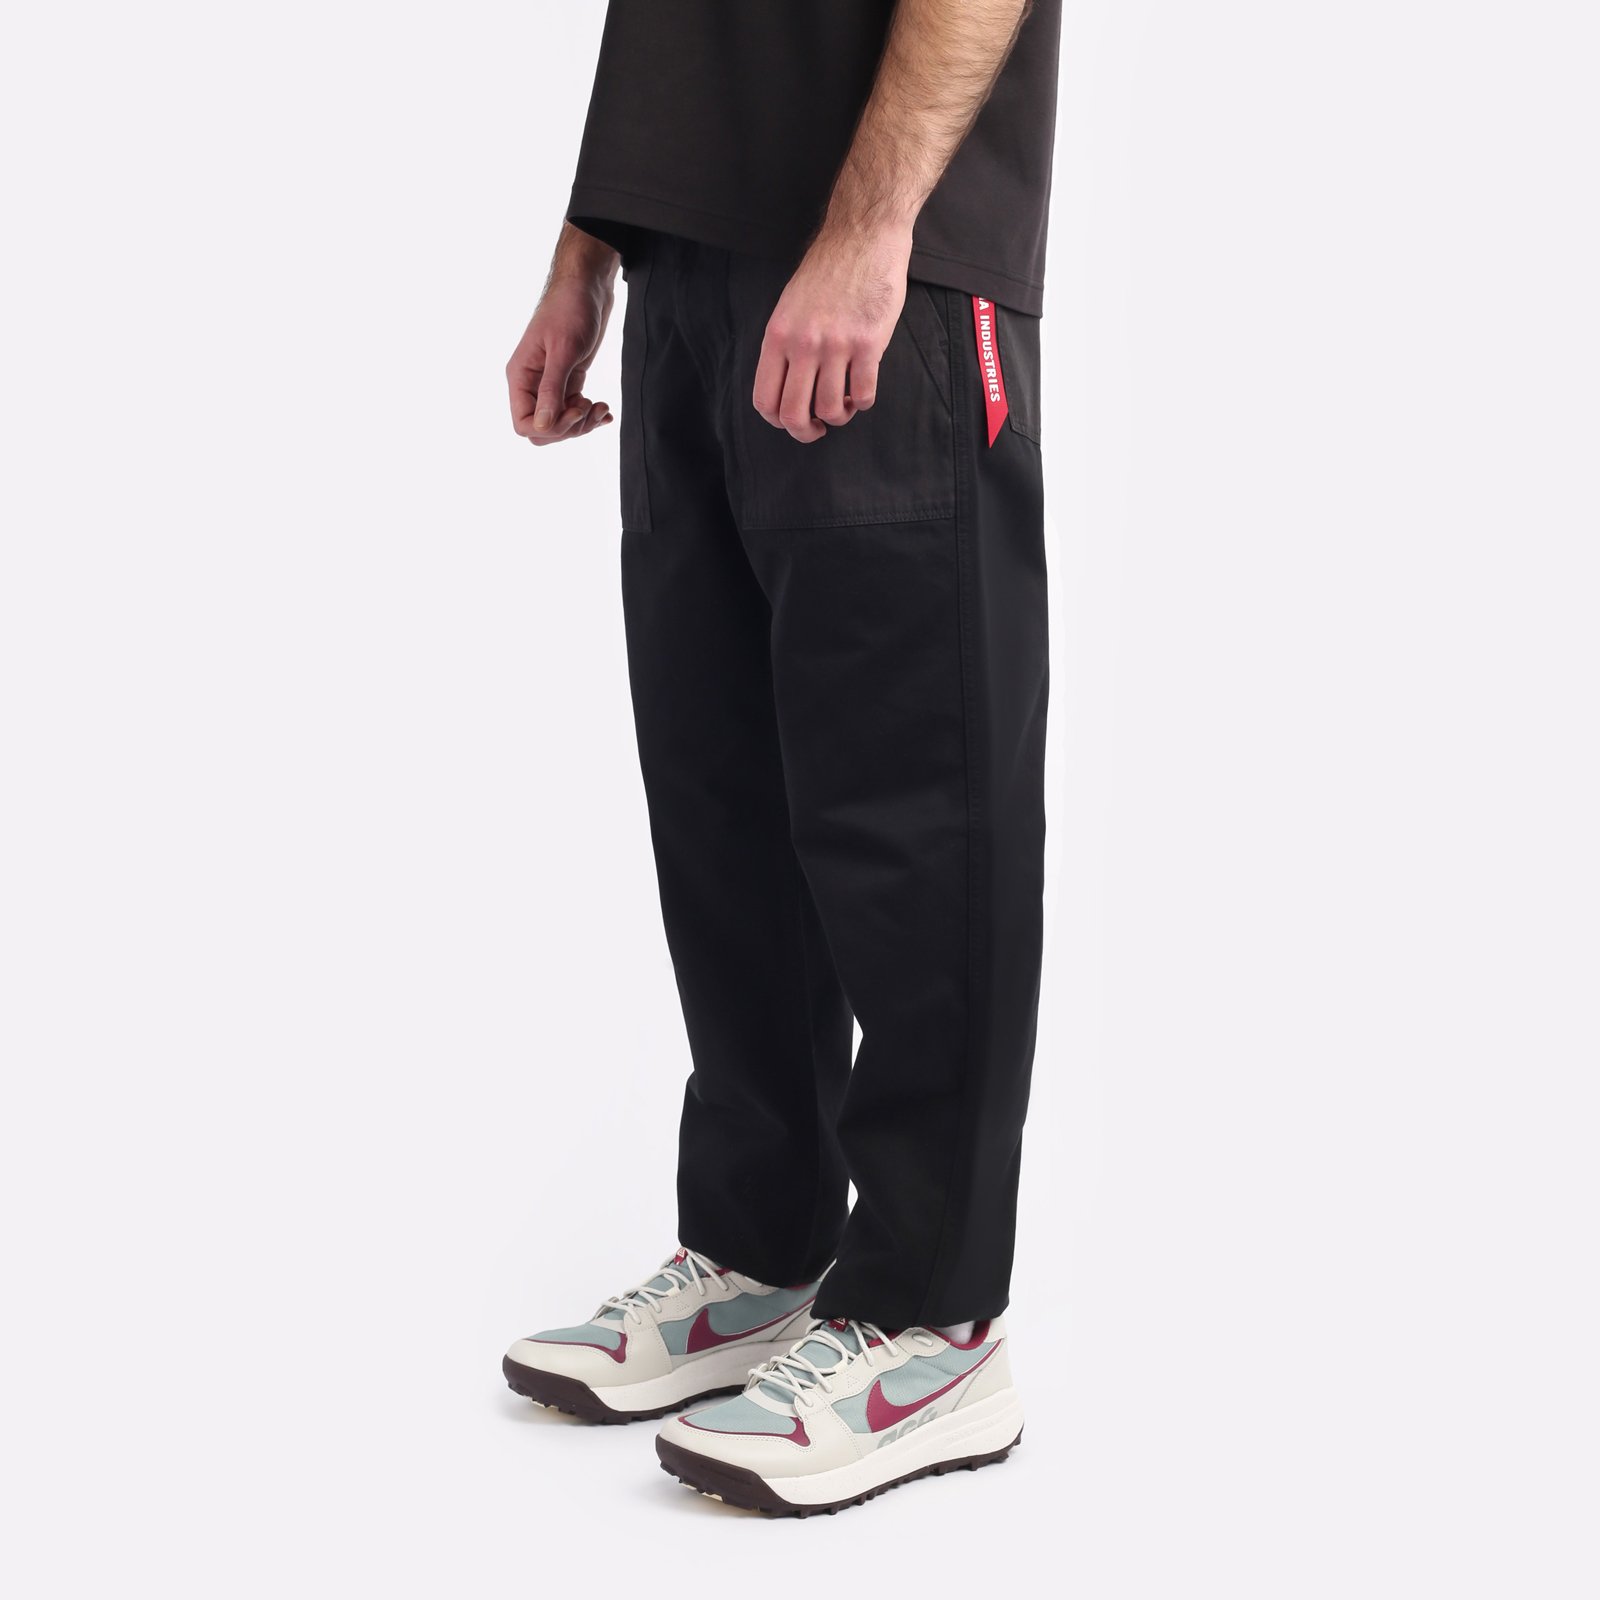 мужские брюки Alpha Industries Fatigue Pant  (MBO52500C1-black)  - цена, описание, фото 3